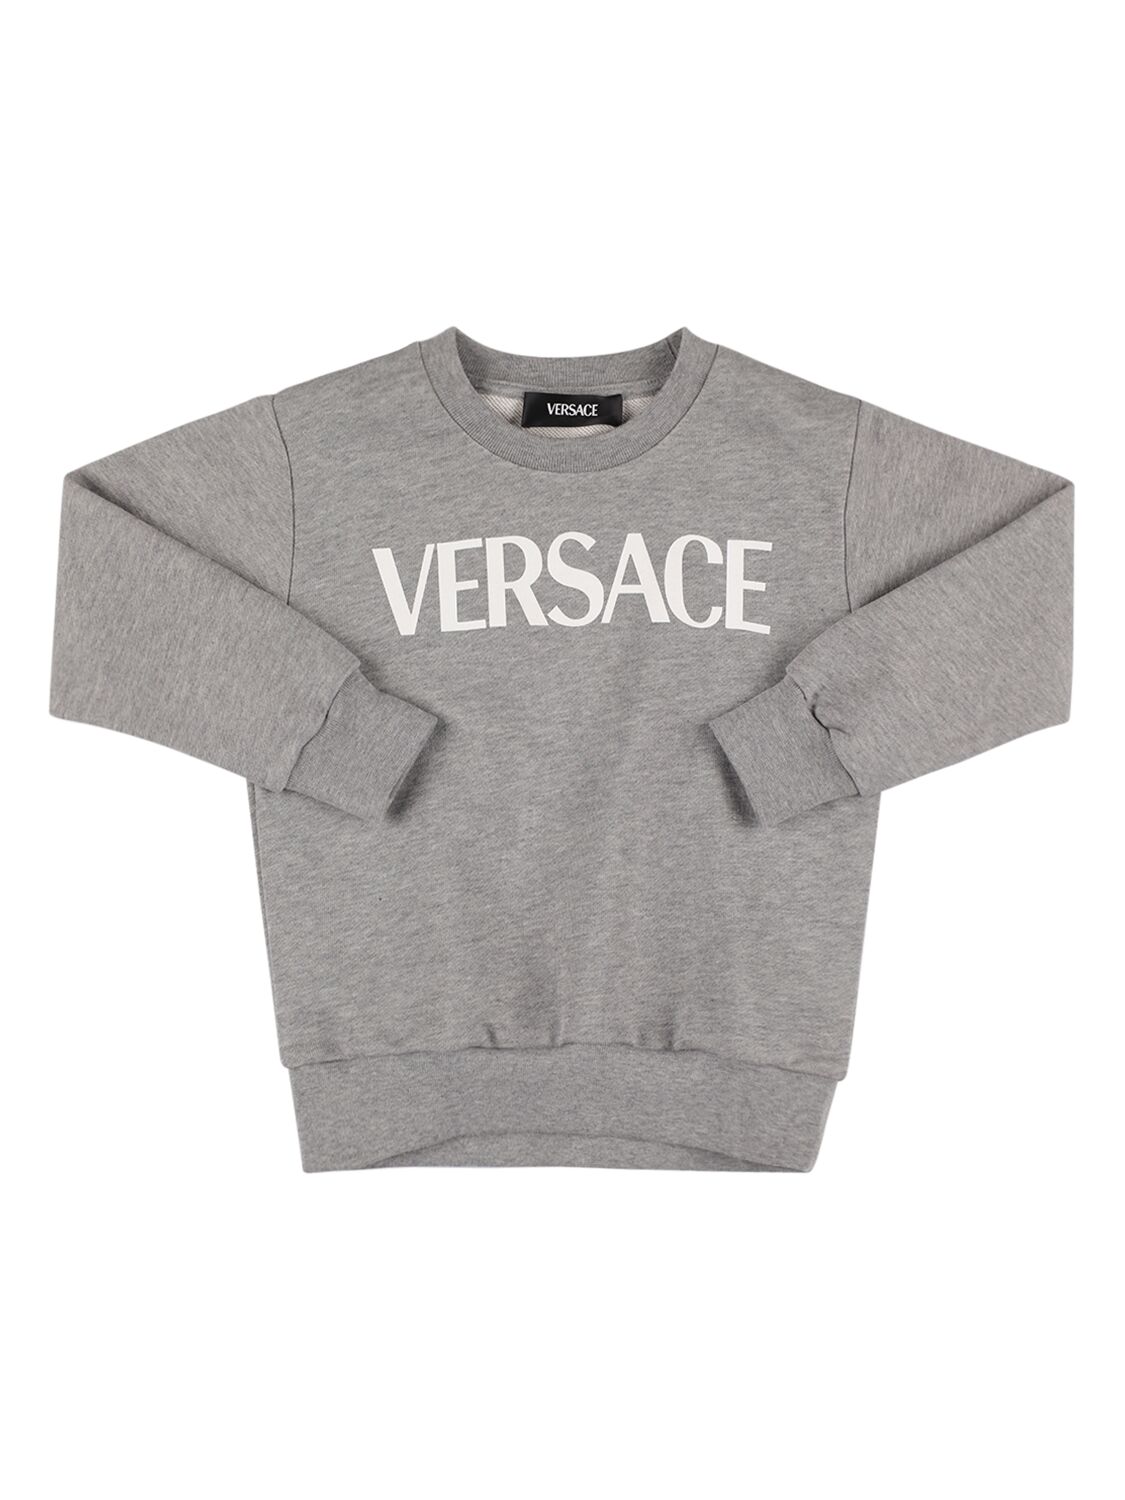 Versace Kids' Medusa Printed Crewneck Sweatshirt In Grey,white